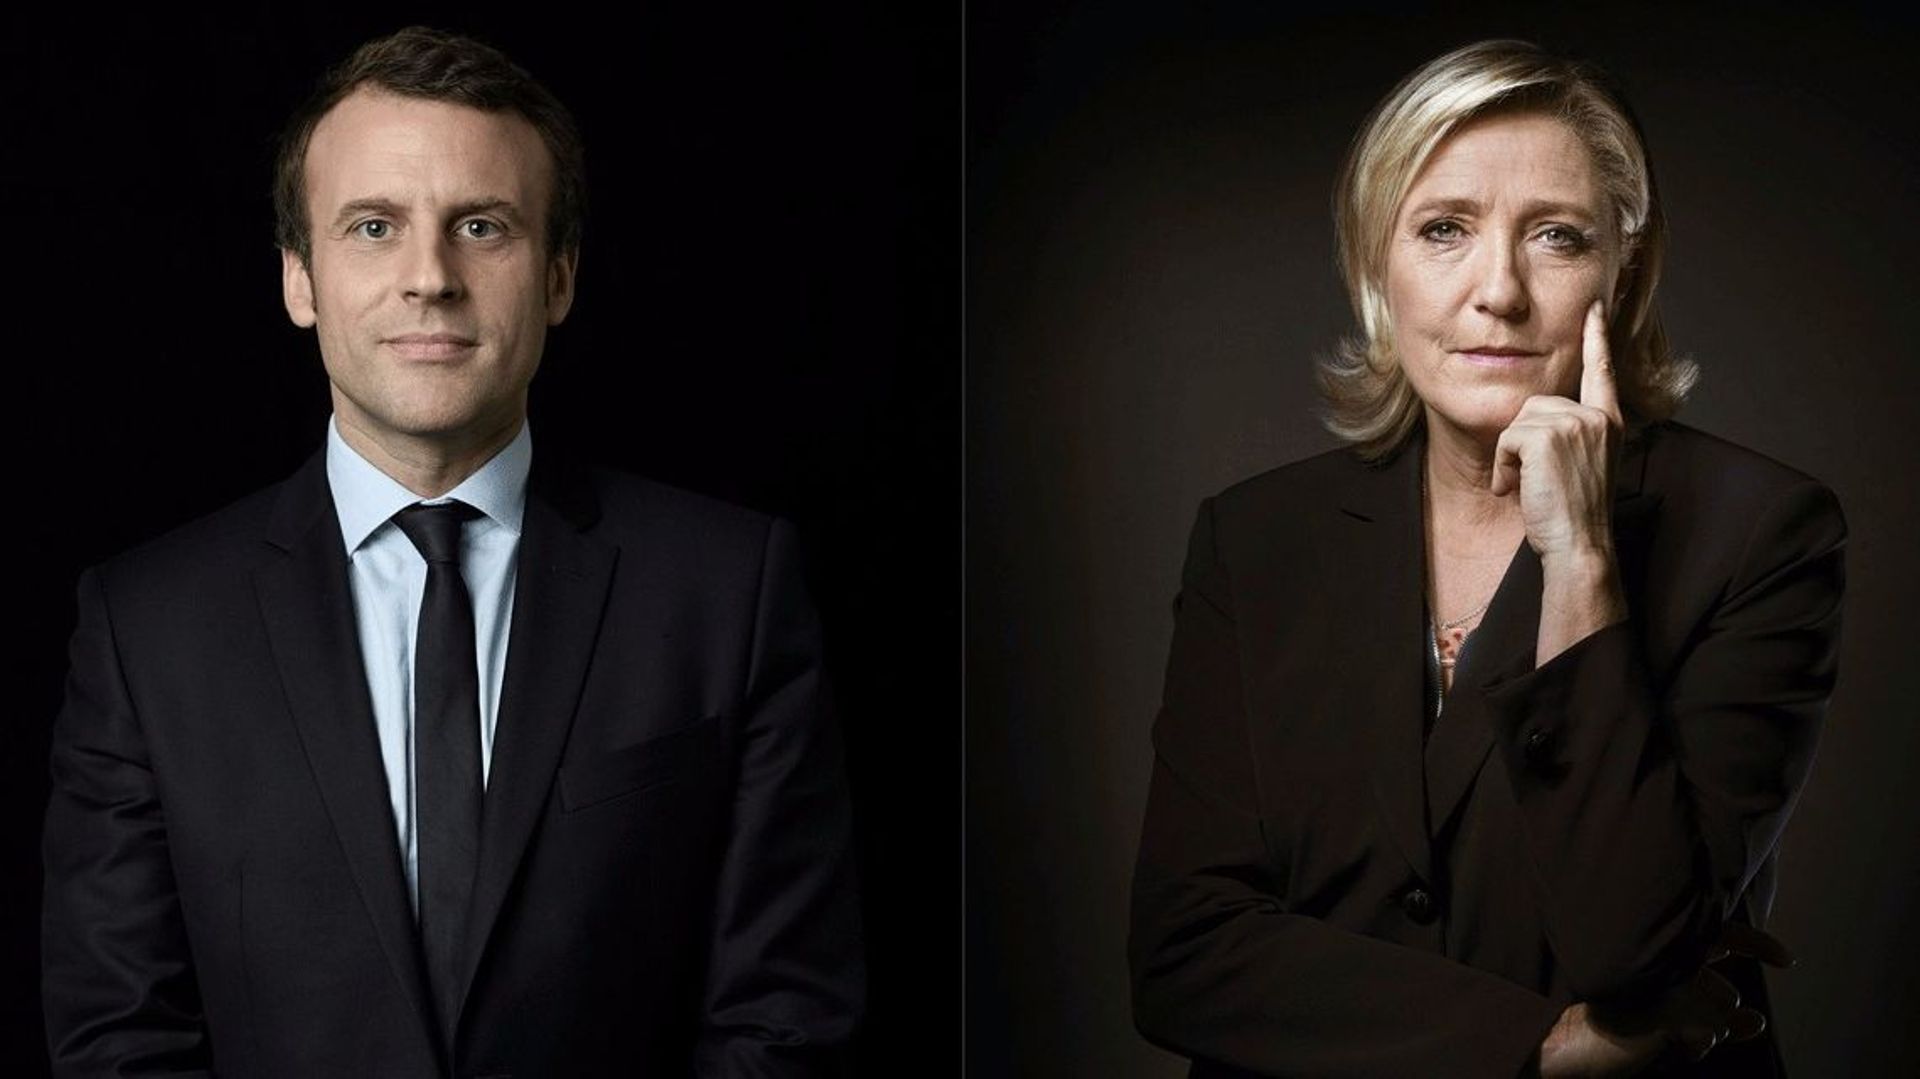 Emmanuel Macron et Marine Le Pen, candidats au second tour à l'élection présidentielle française 2017